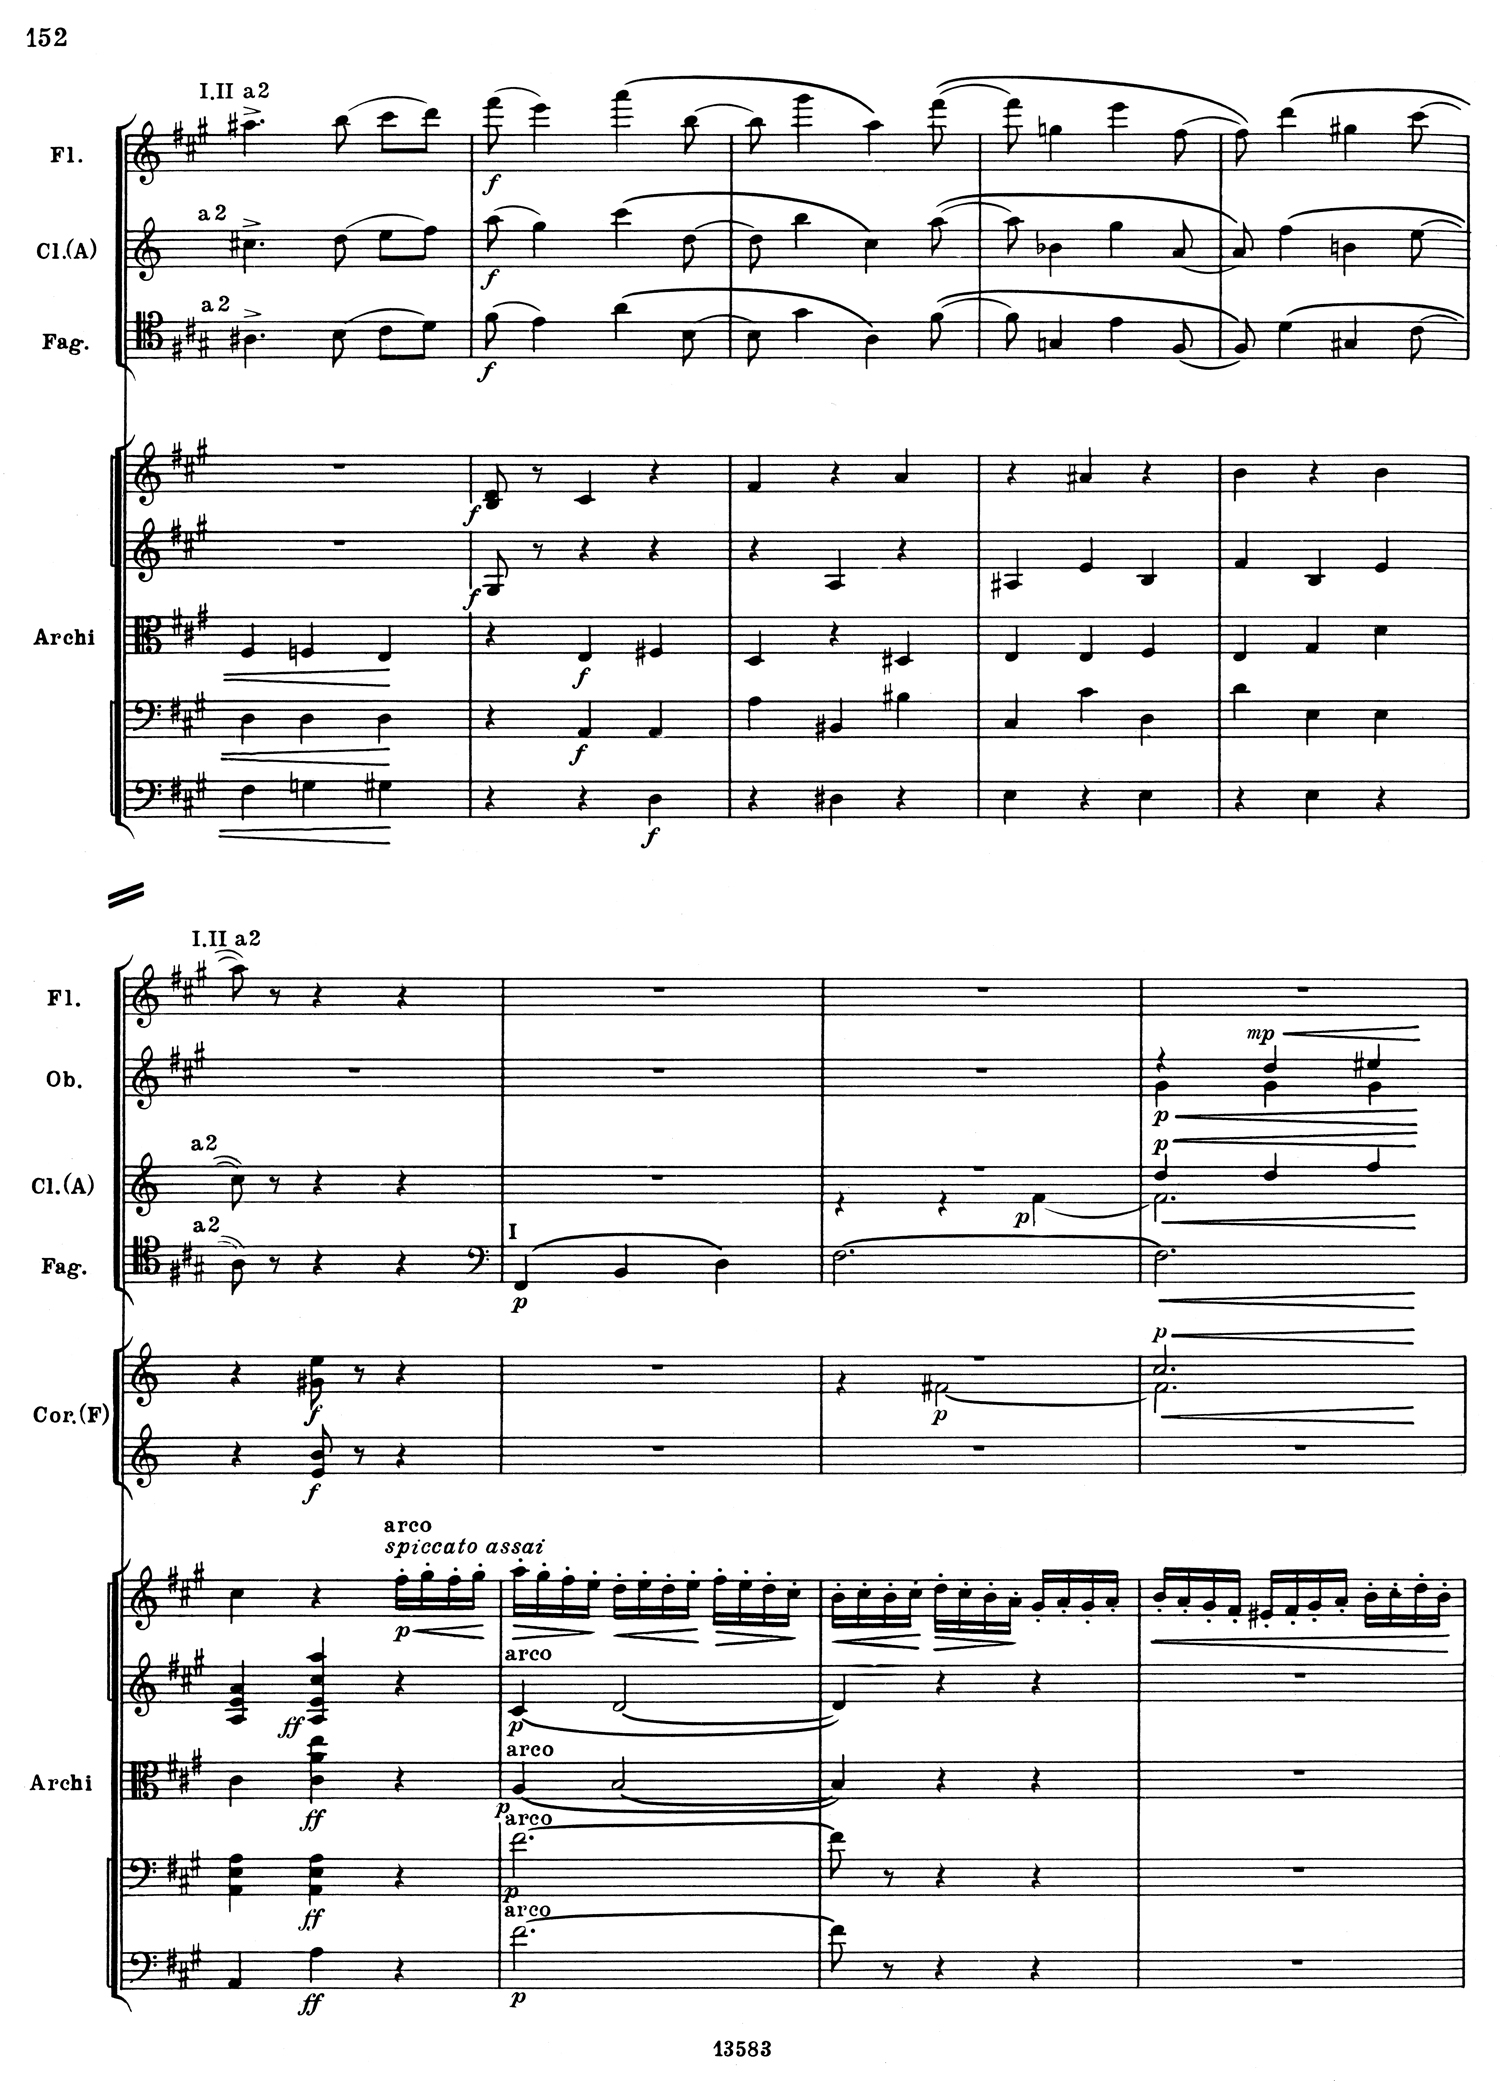 Tchaikovsky 5 Mvt 3 Score 7.jpg